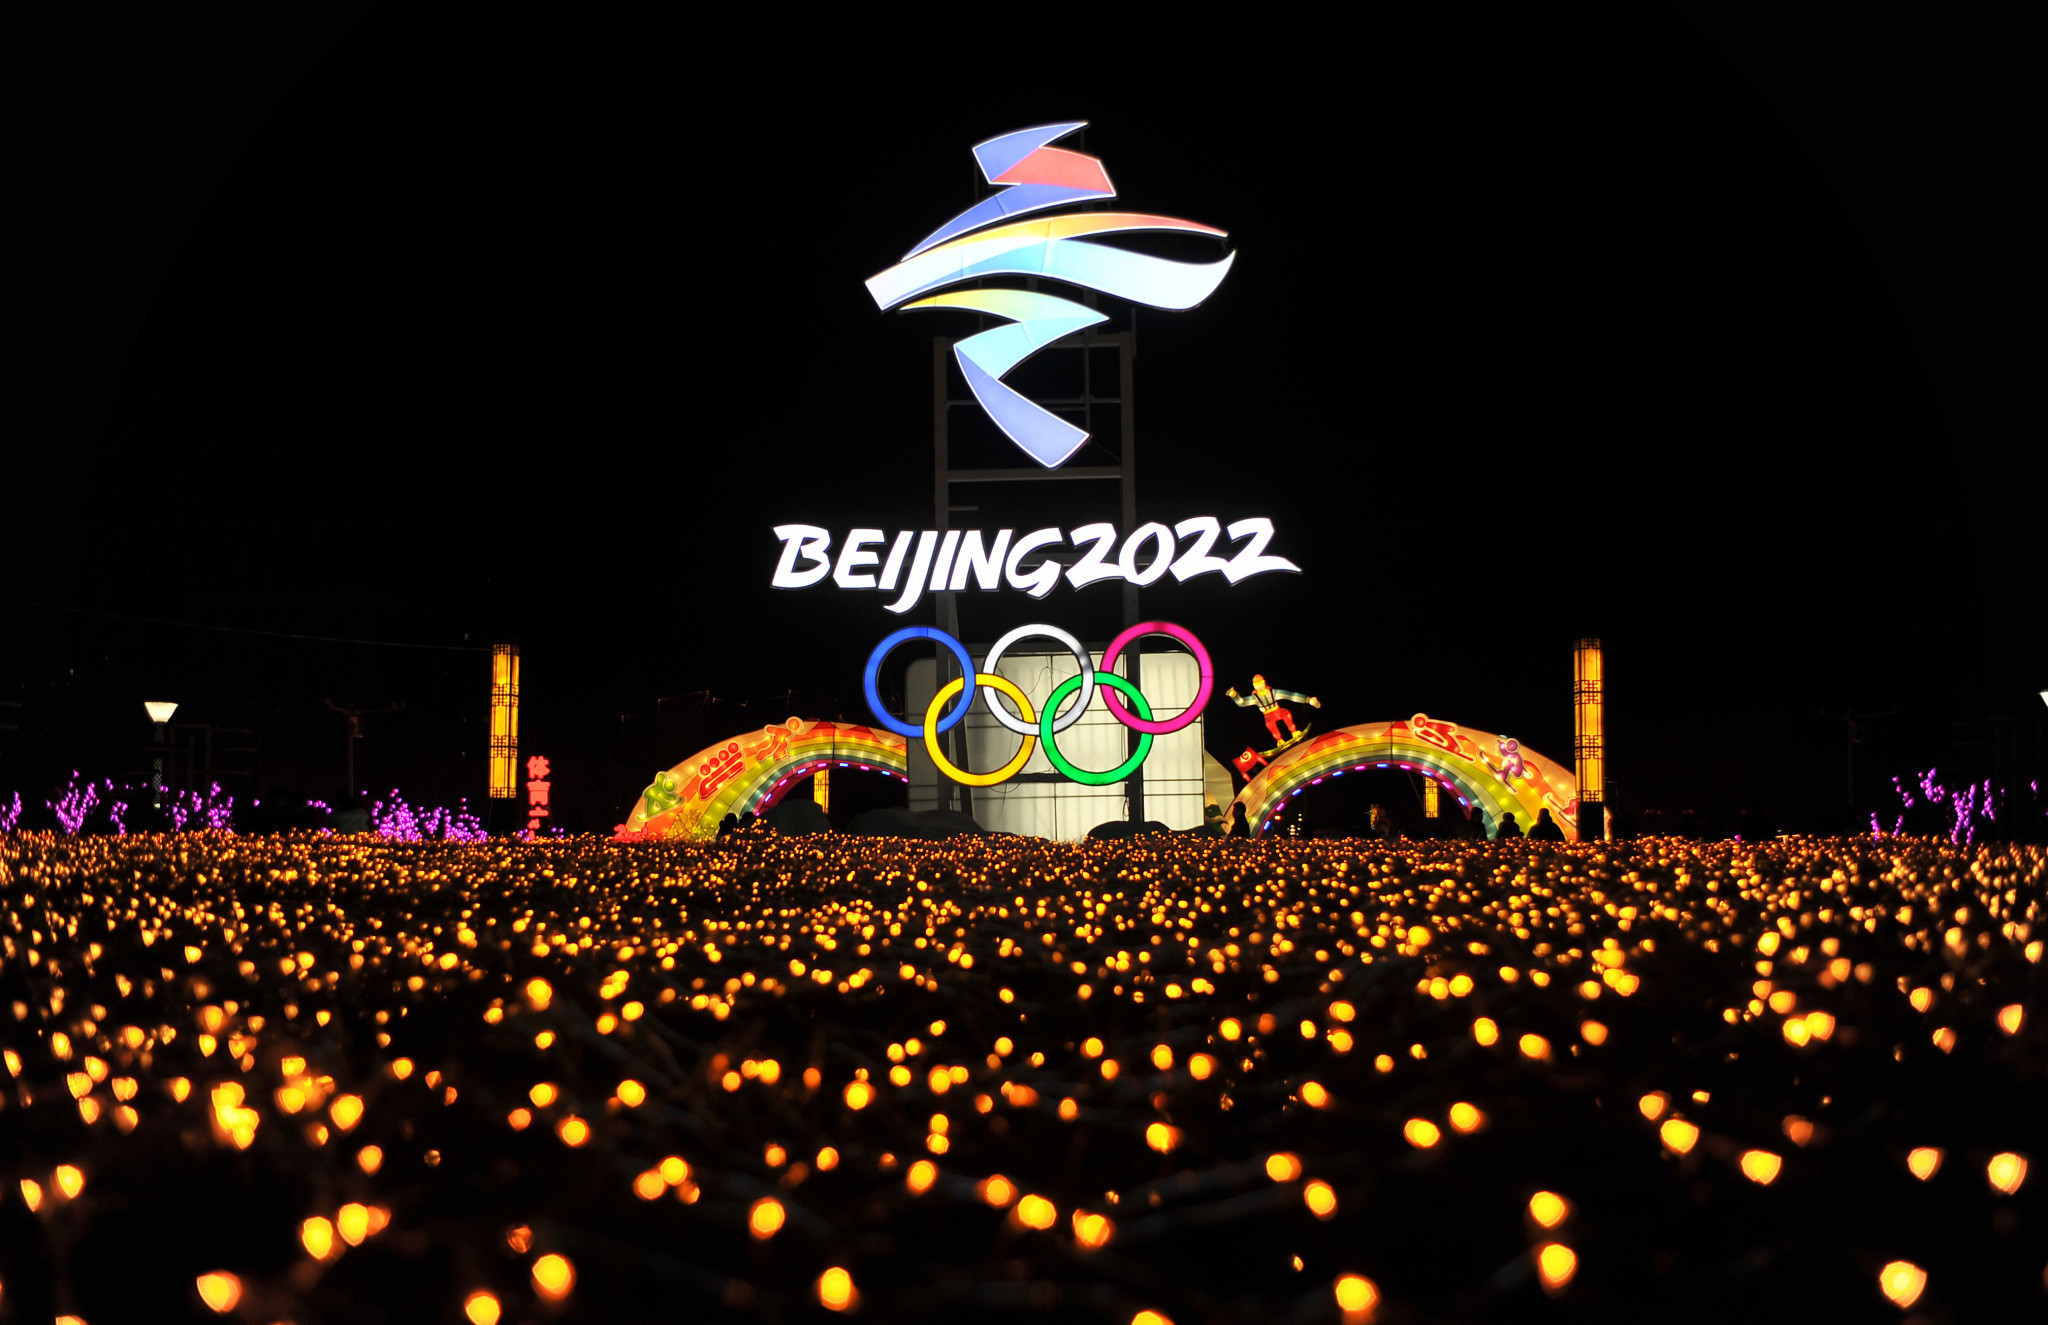 अगर इवेंट होता है तो, बीजिंग इकलौता शहर बन जाएगा जो समर और विंटर ओलंपिक का आयोजन करेगा